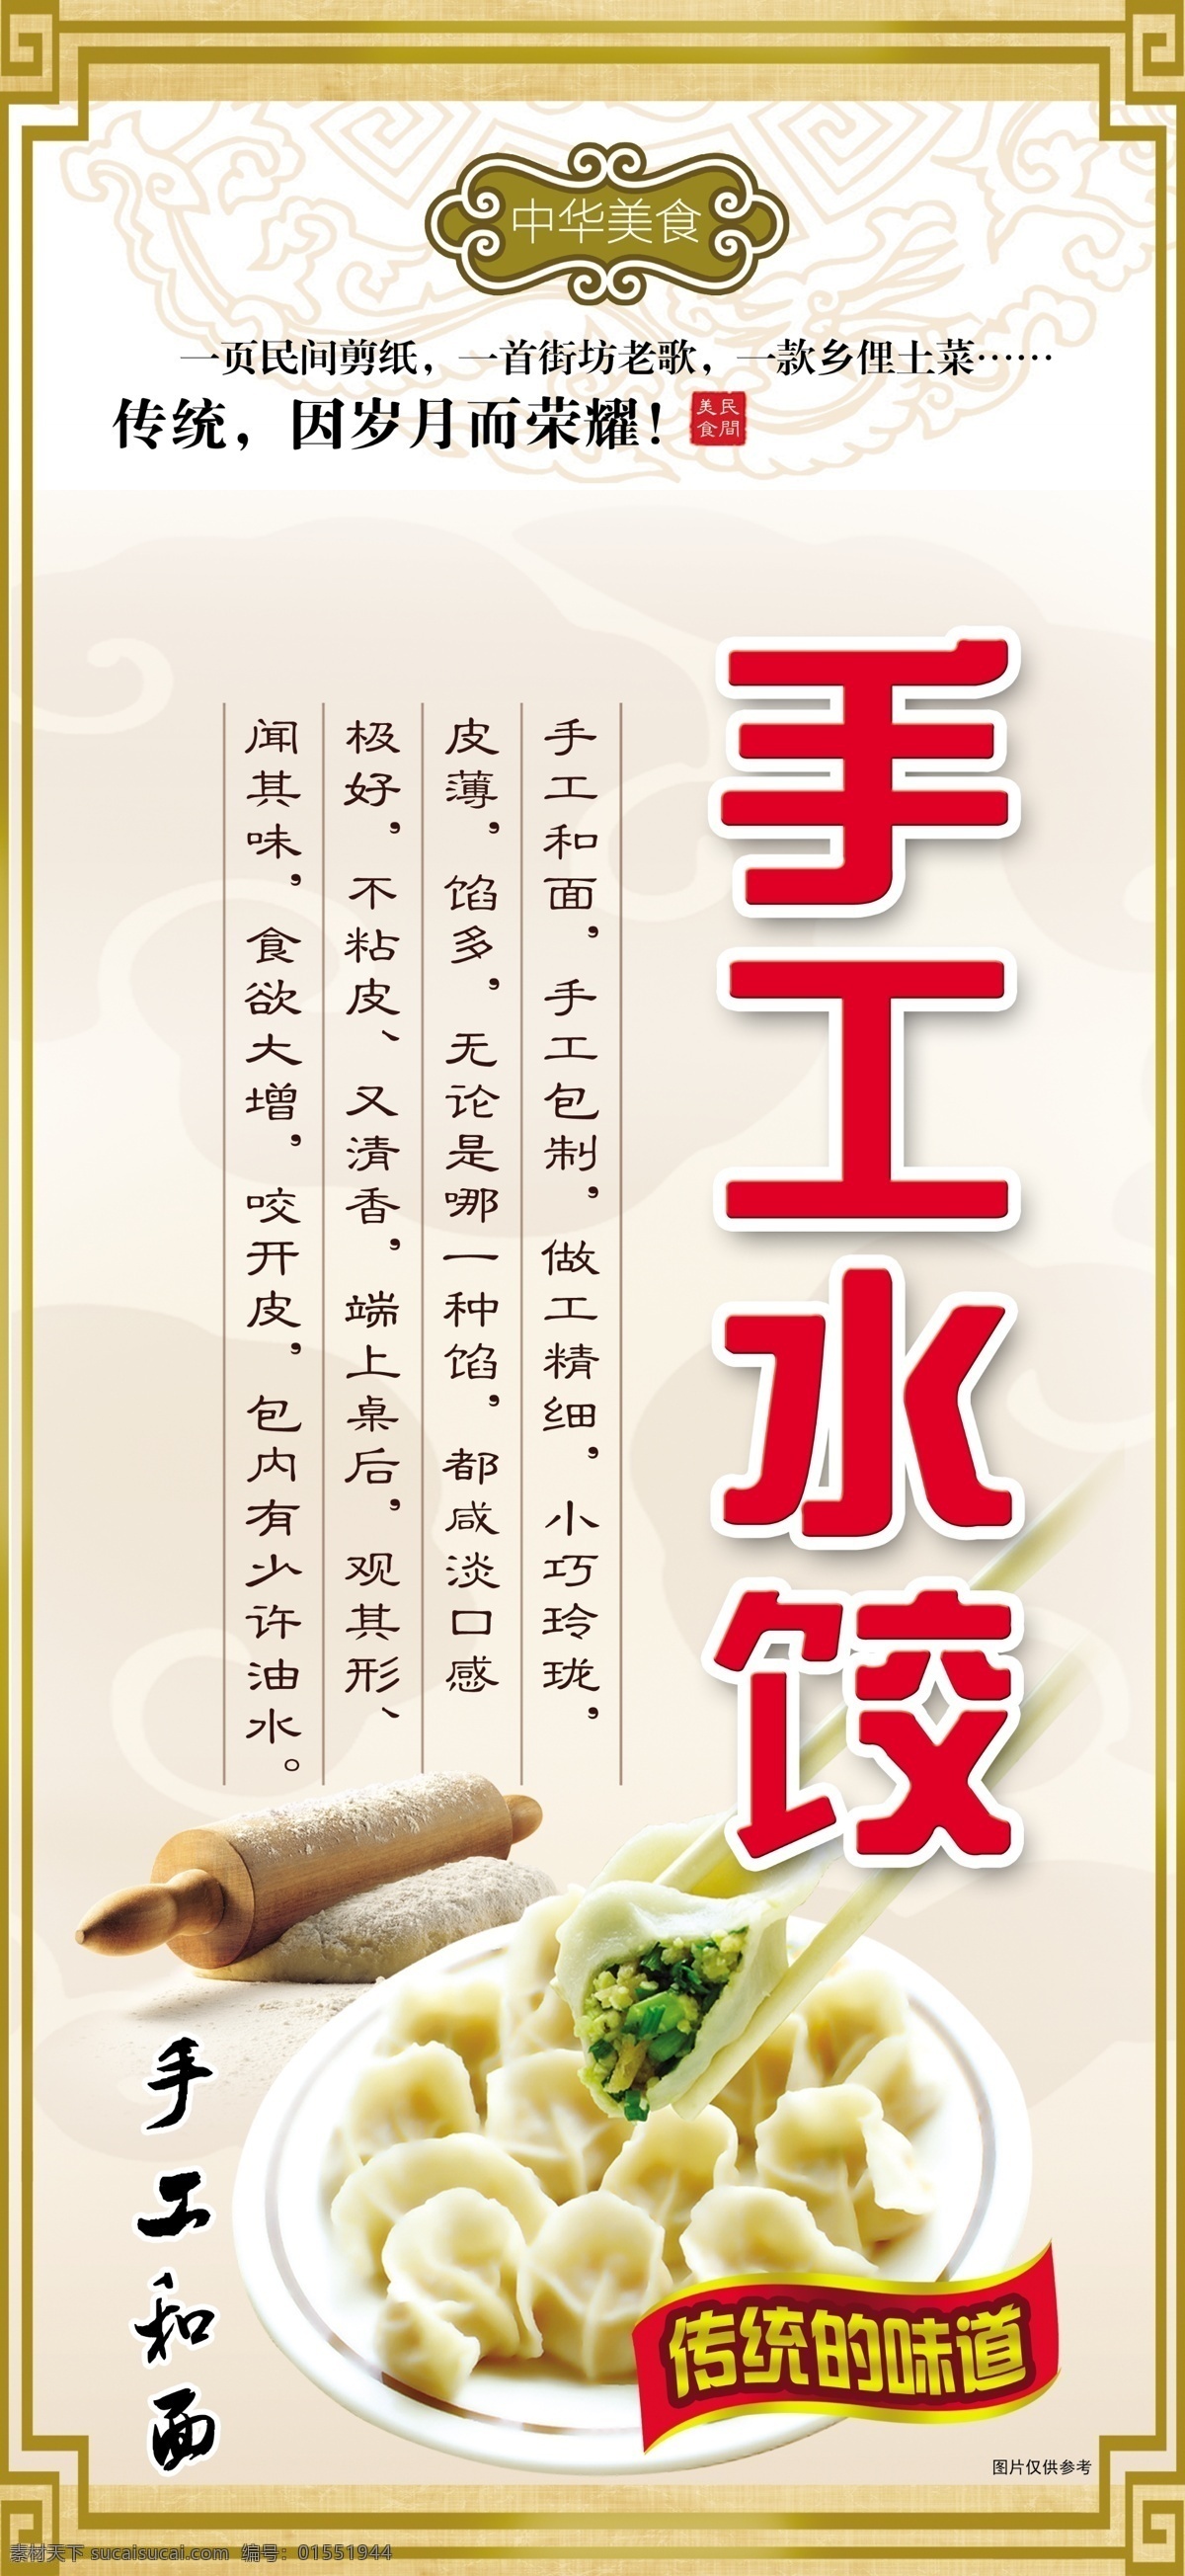 水饺写真展板 水饺 手工水饺 水饺图片 手工和面 水饺的来历 中华美食 展板模板